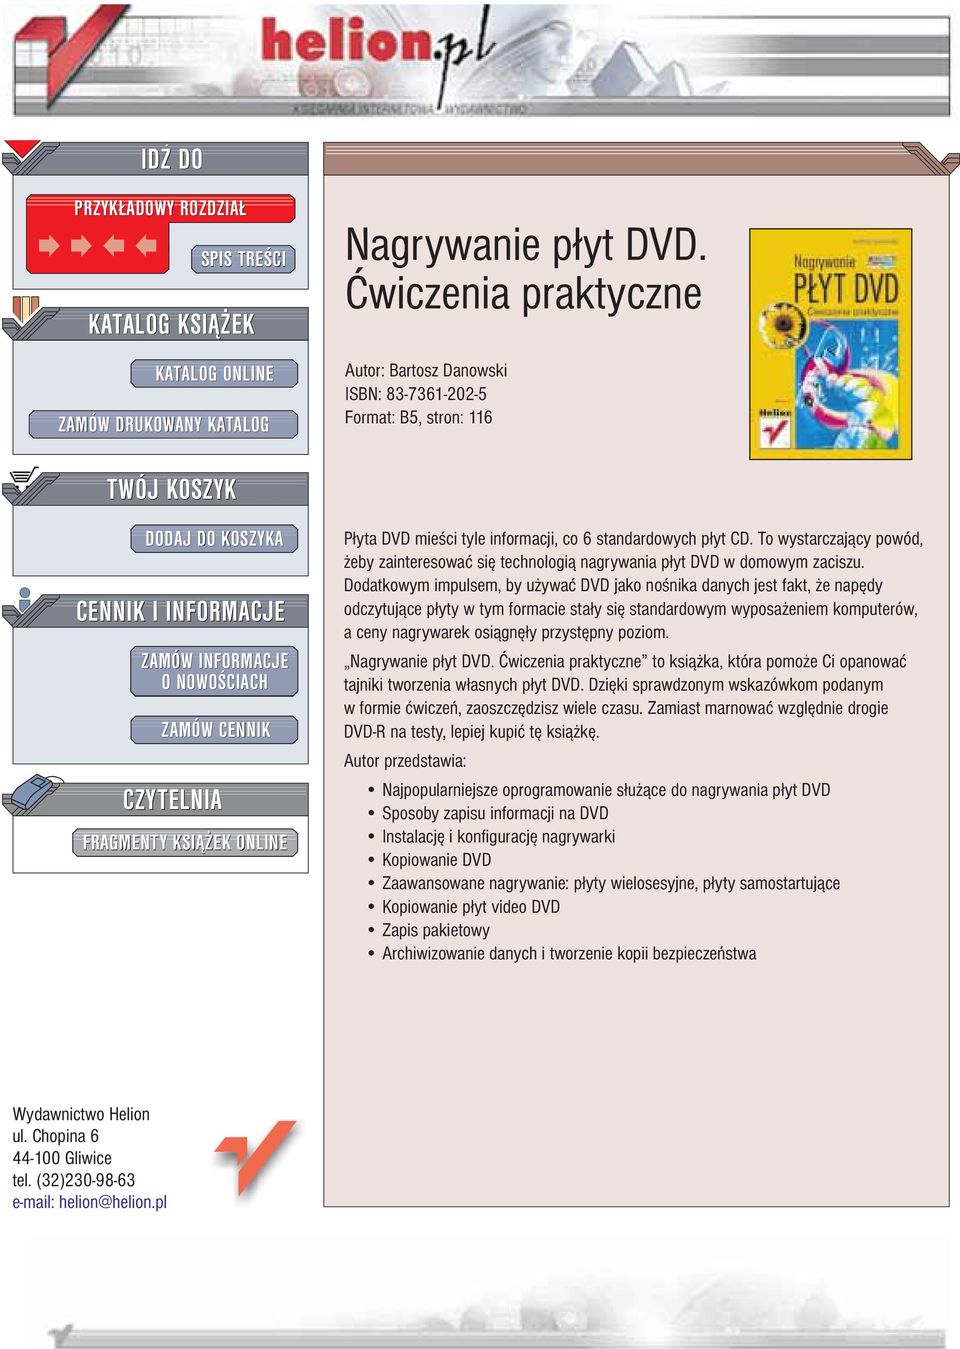 KSI EK ONLINE P³yta DVD mie ci tyle informacji, co 6 standardowych p³yt CD. To wystarczaj¹cy powód, eby zainteresowaæ siê technologi¹ nagrywania p³yt DVD w domowym zaciszu.